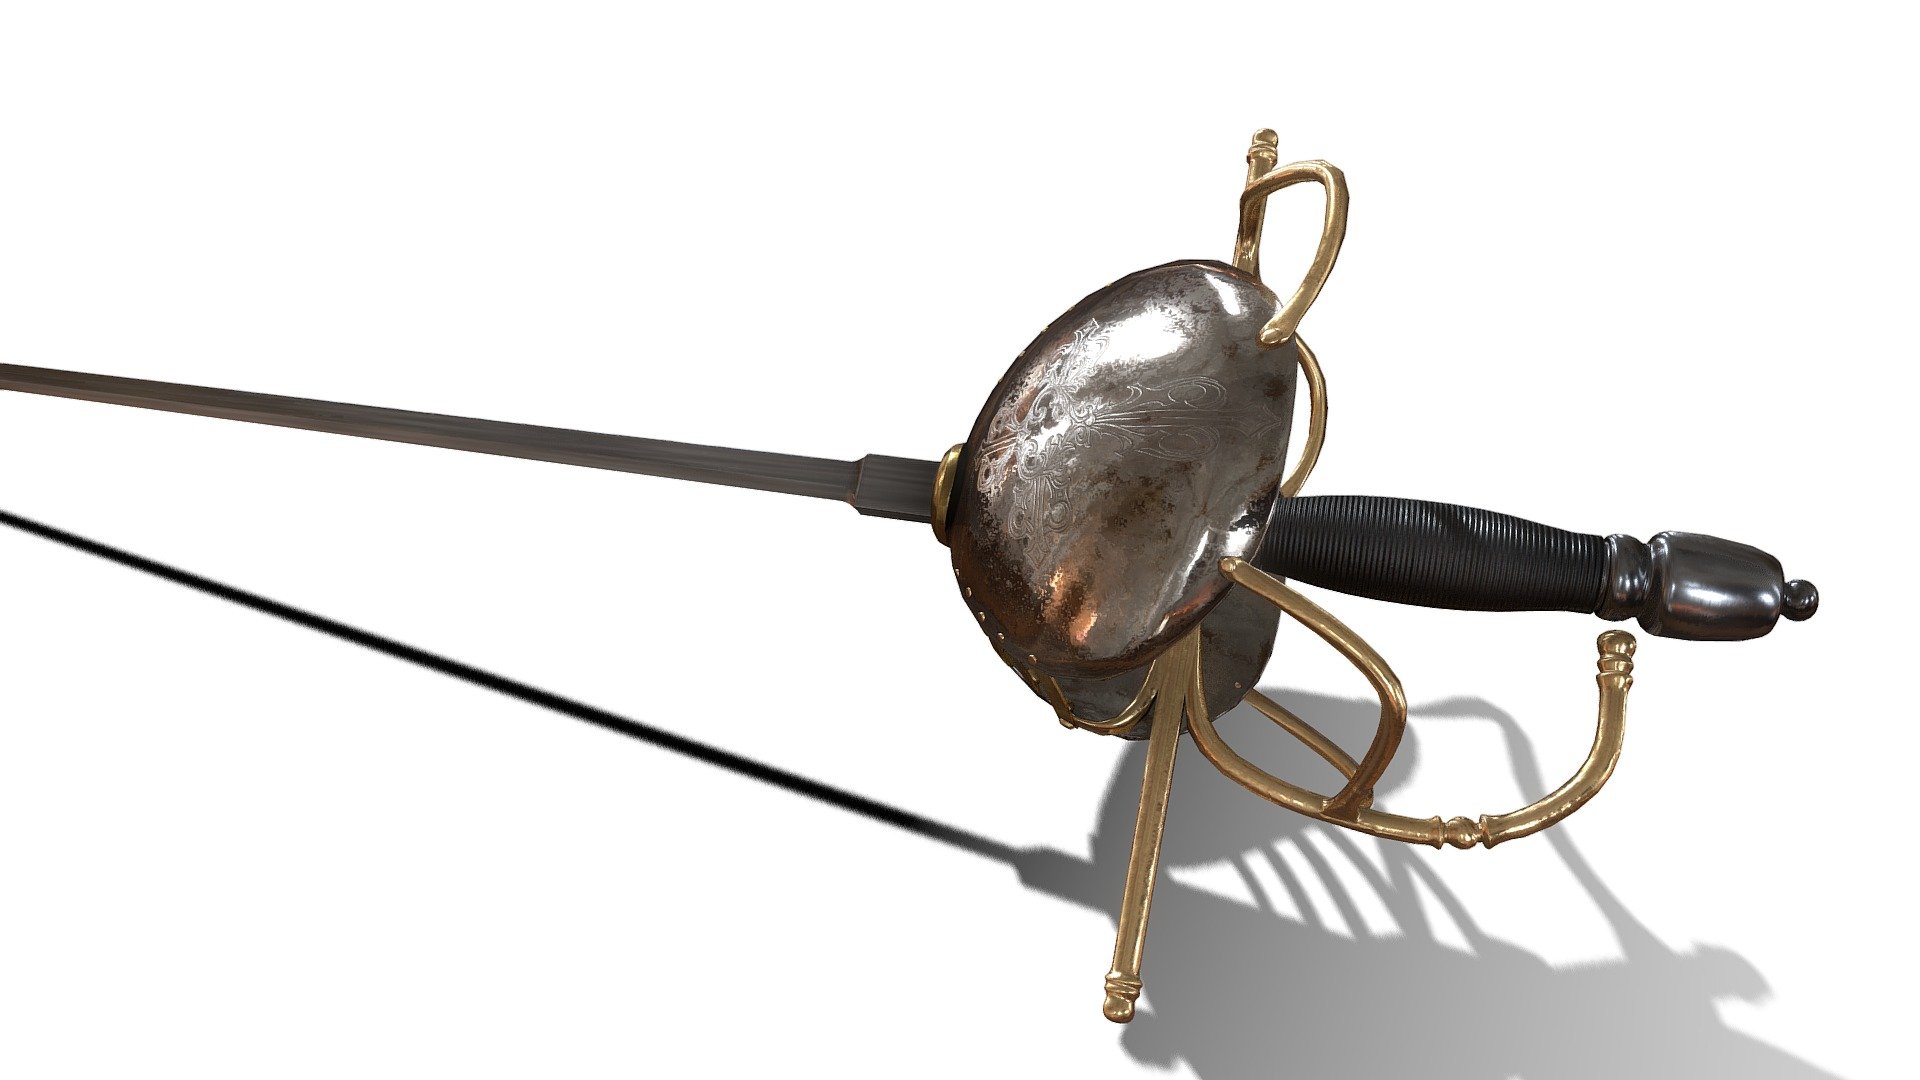 Fencing Sword
3dsmax - Quixel - Sketchfab - Fencing Sword - 3D model by AssetJungle (@elijahtxva) 3d model